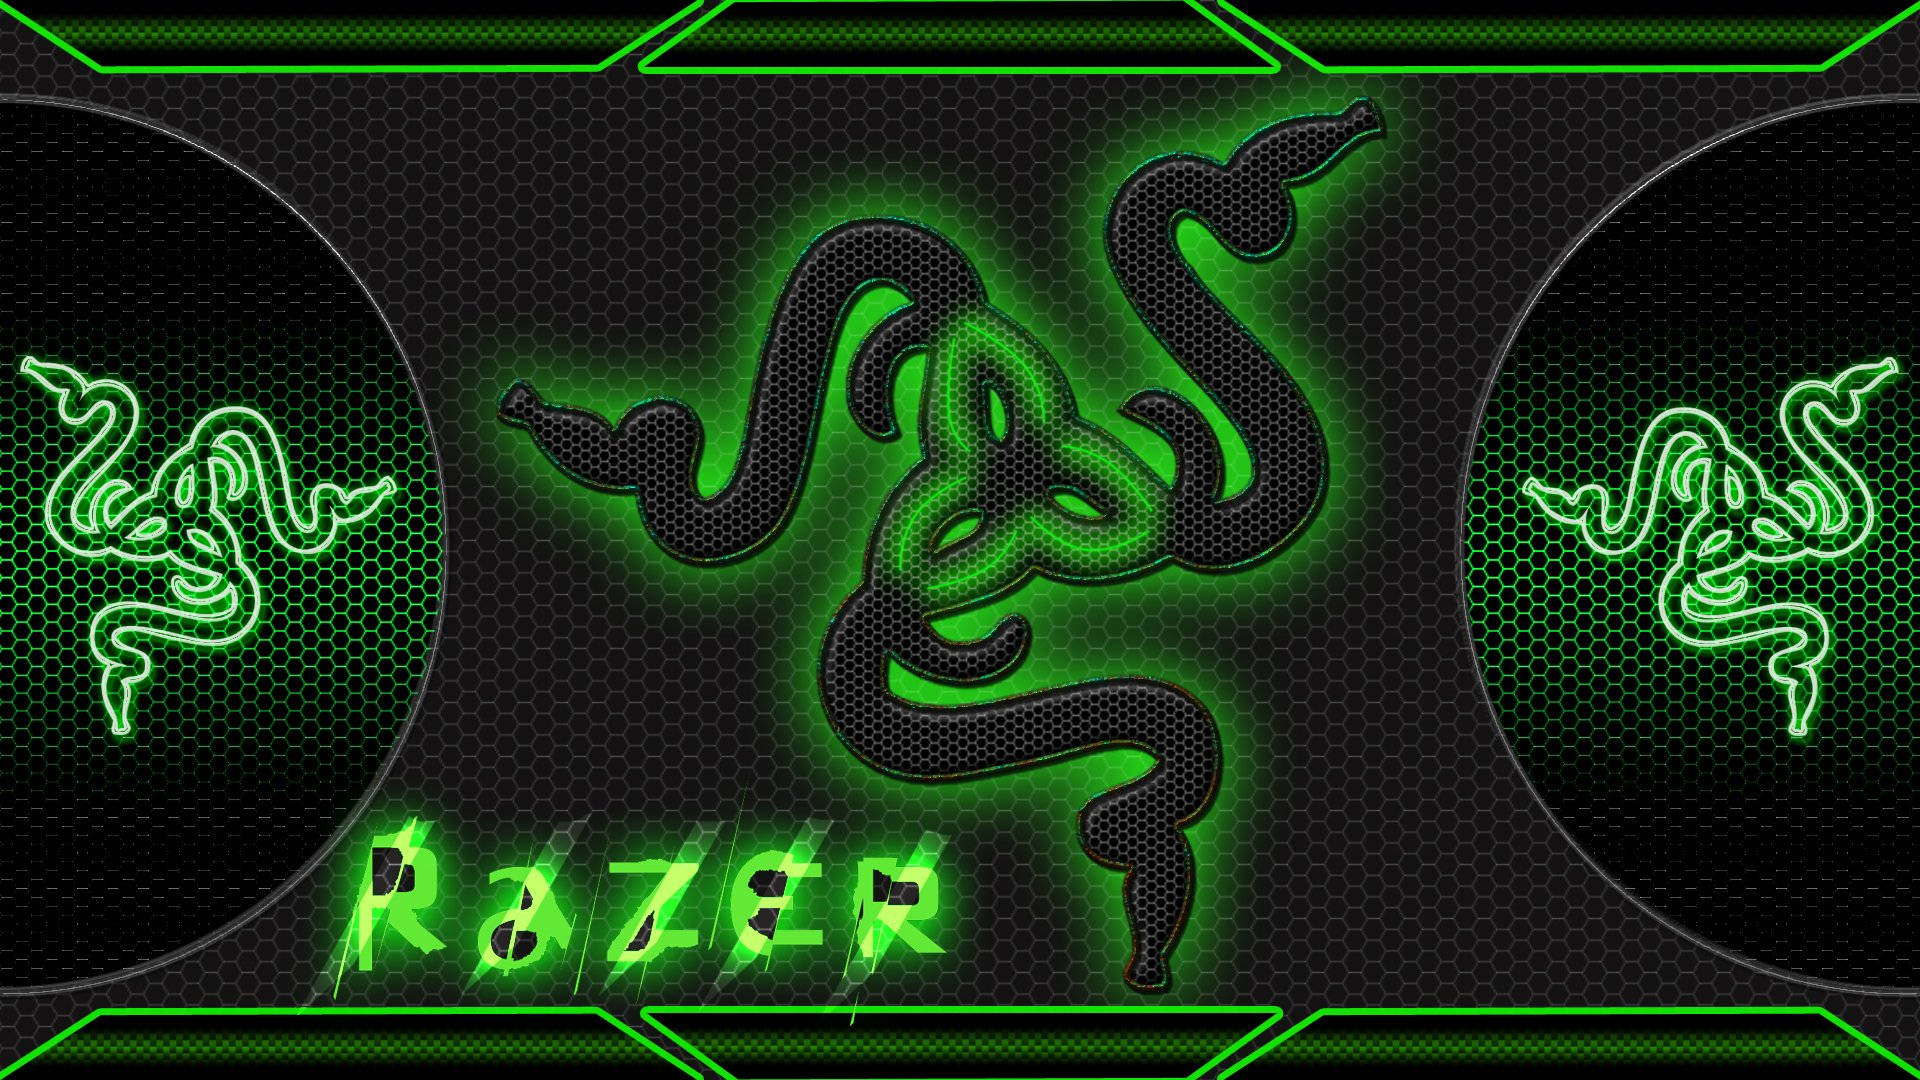 Logo Razer, hình nền xanh lá cây chắc chắn sẽ làm hài lòng những ai đang tìm kiếm một thiết kế đơn giản, thanh lịch và độc đáo. Sở hữu nó là để được thể hiện sự cá tính riêng của mình.